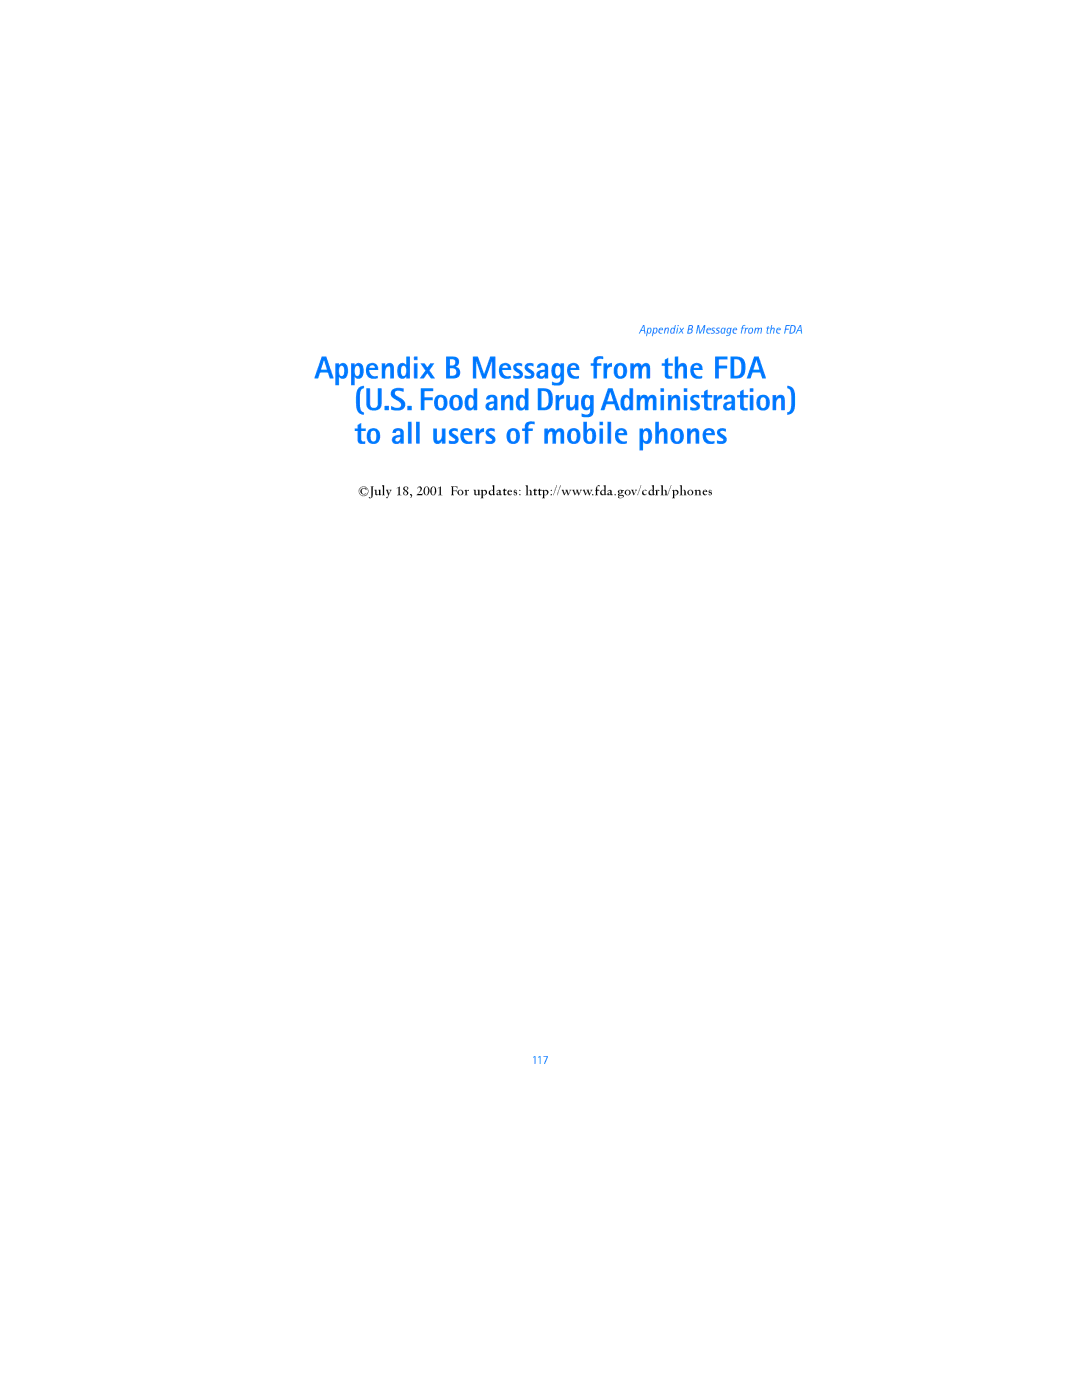 Nokia 6820i warranty Appendix B Message from the FDA 